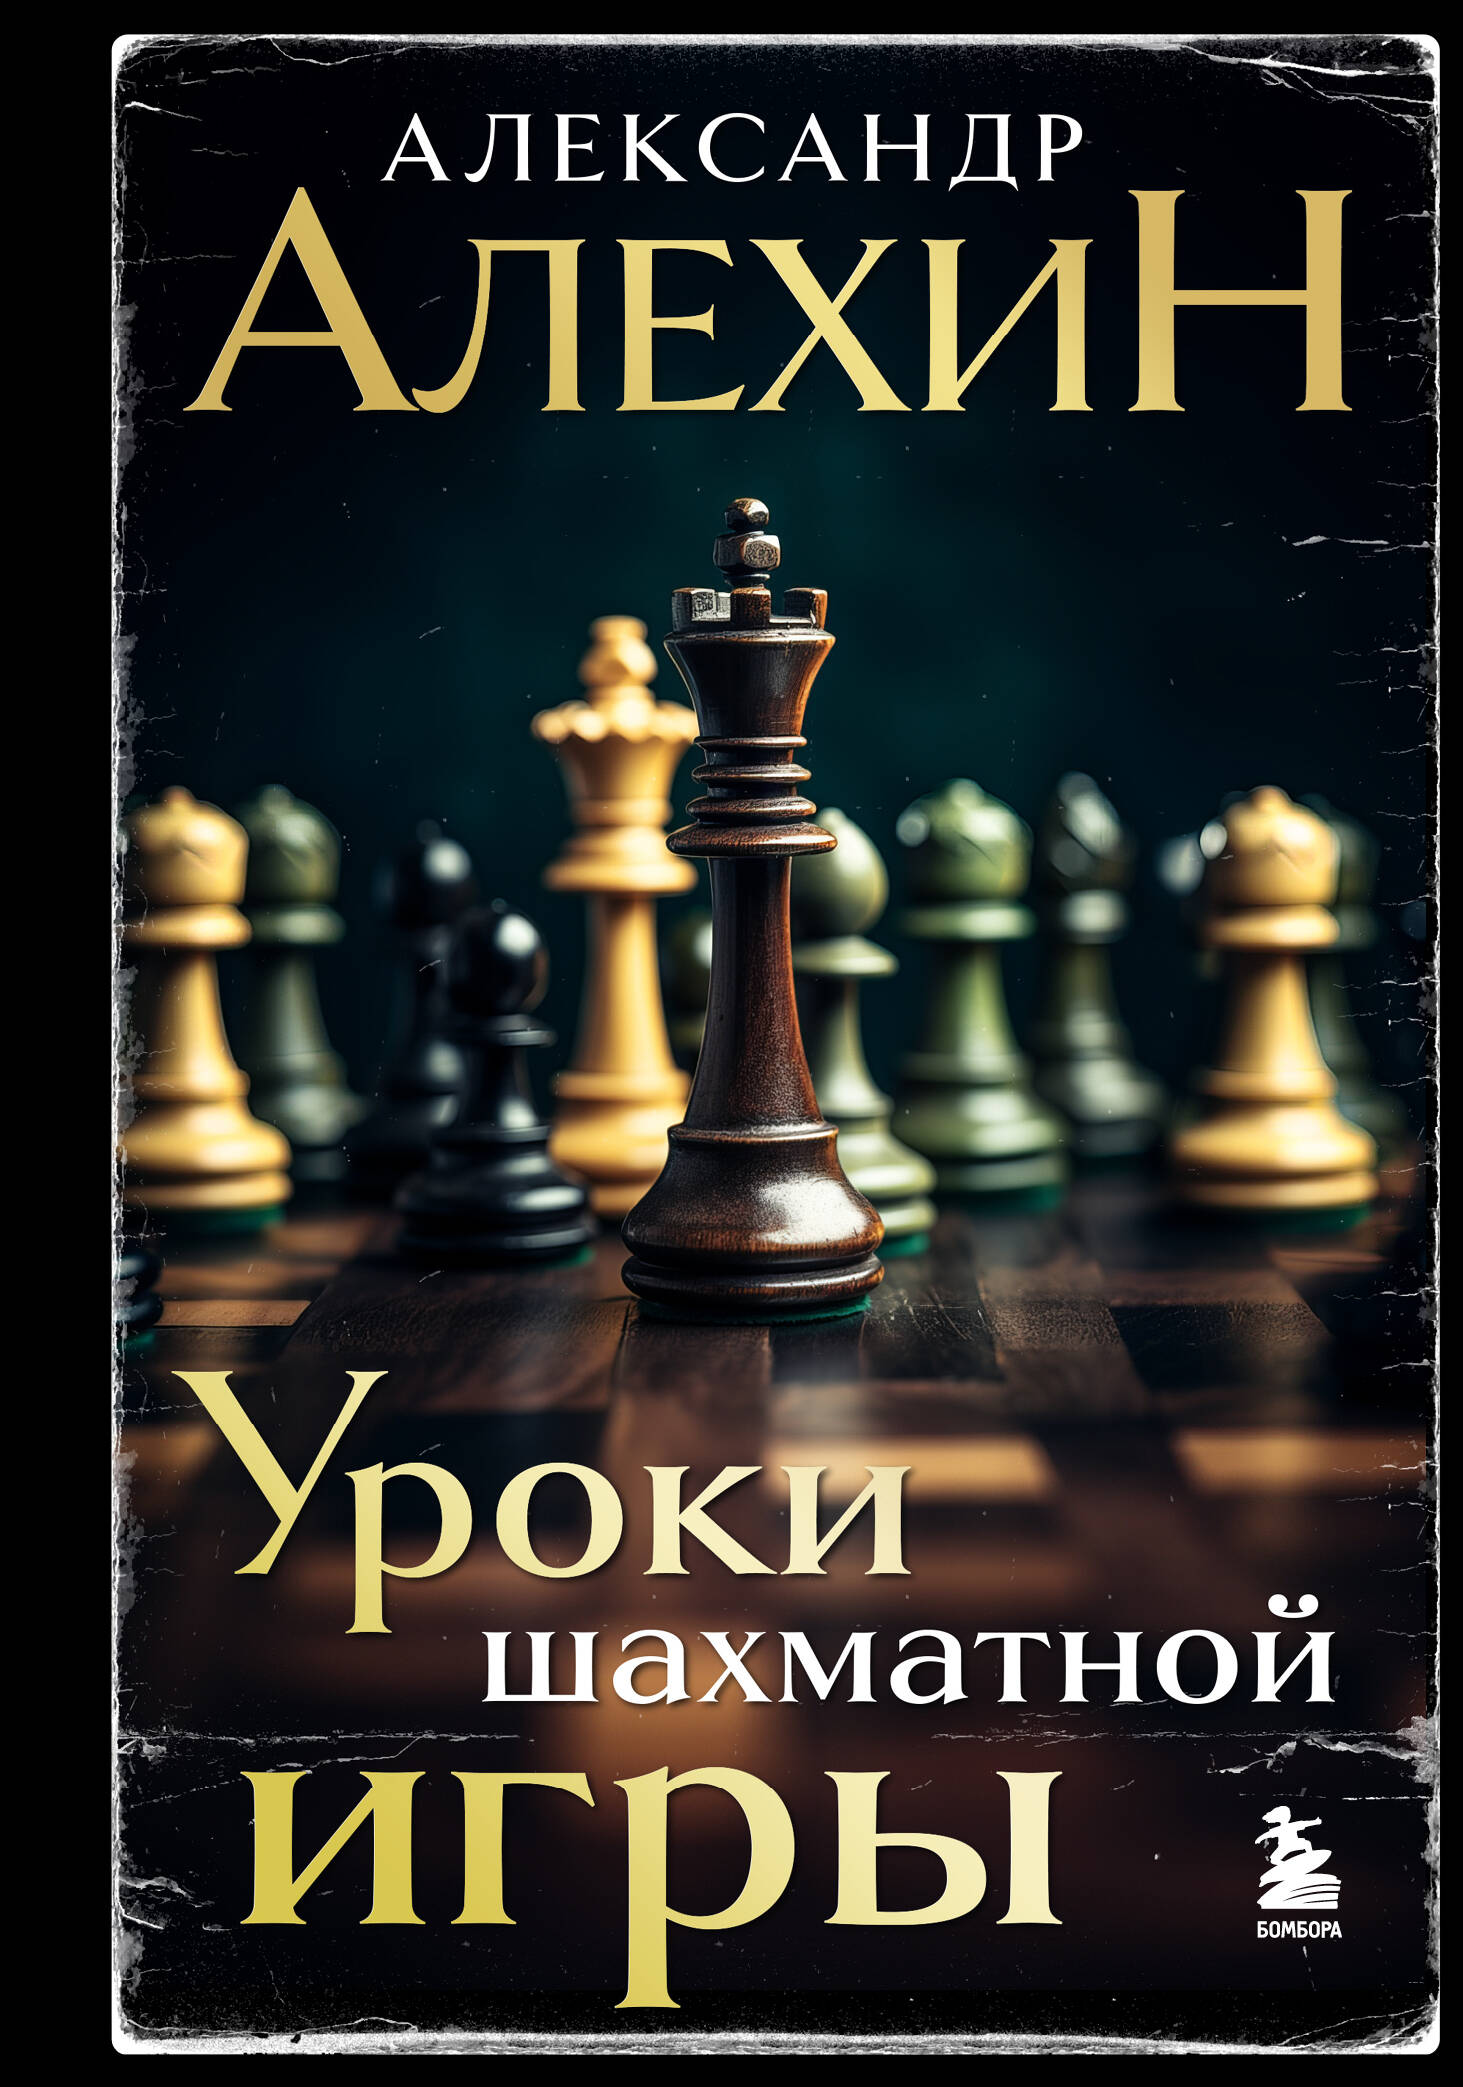 Уроки шахматной игры алехин александр александрович уроки шахматной игры